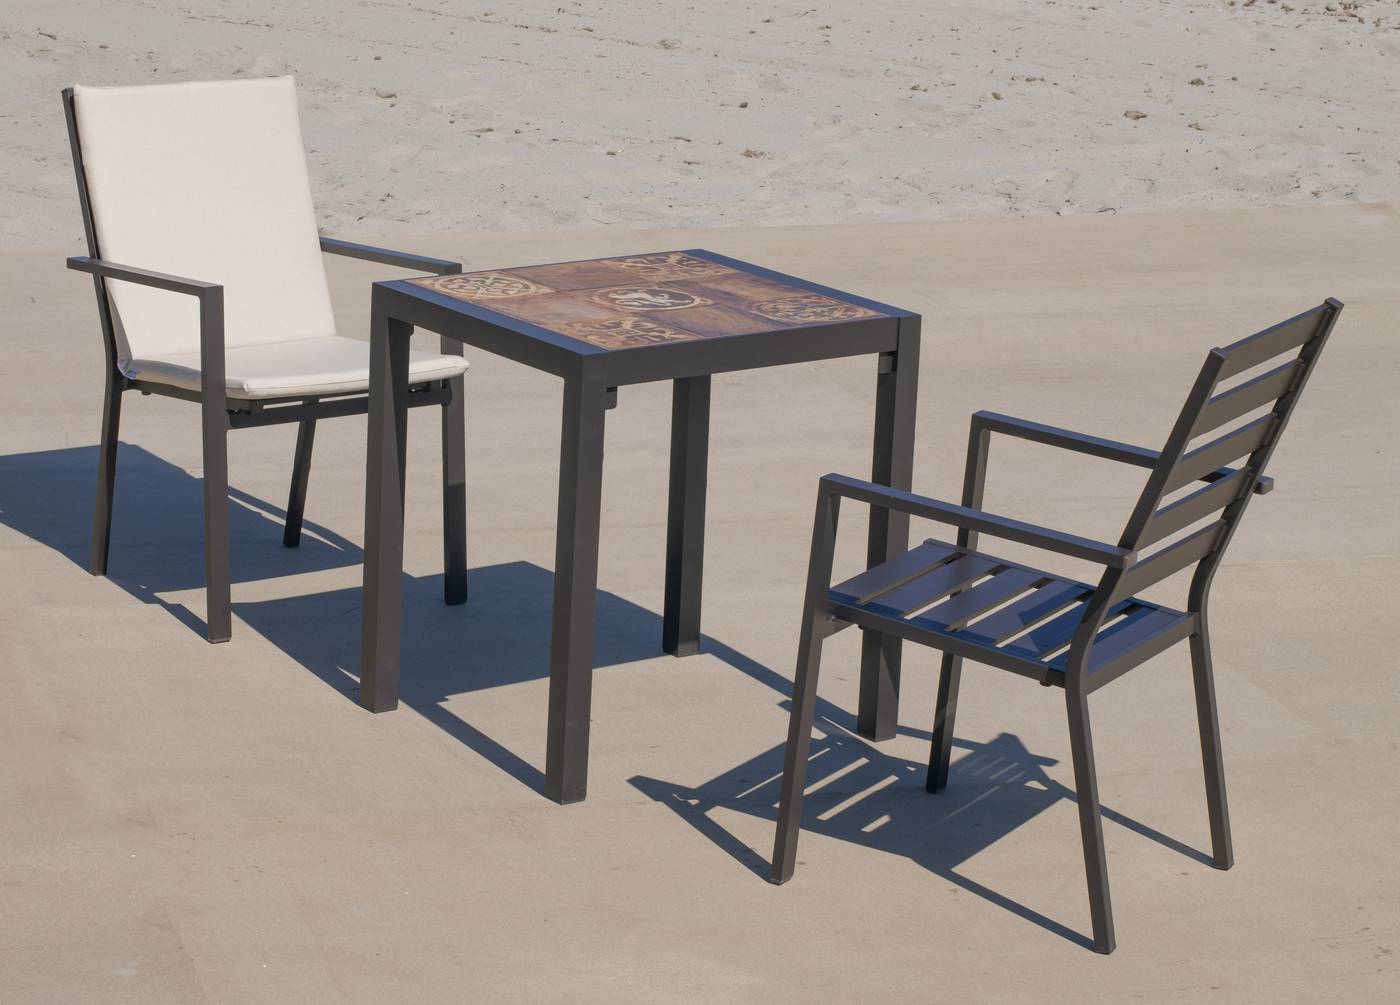 Conjunto de aluminio color marrón: Mesa cuadrada con tablero mosaico de 60 cm + 2 sillones.